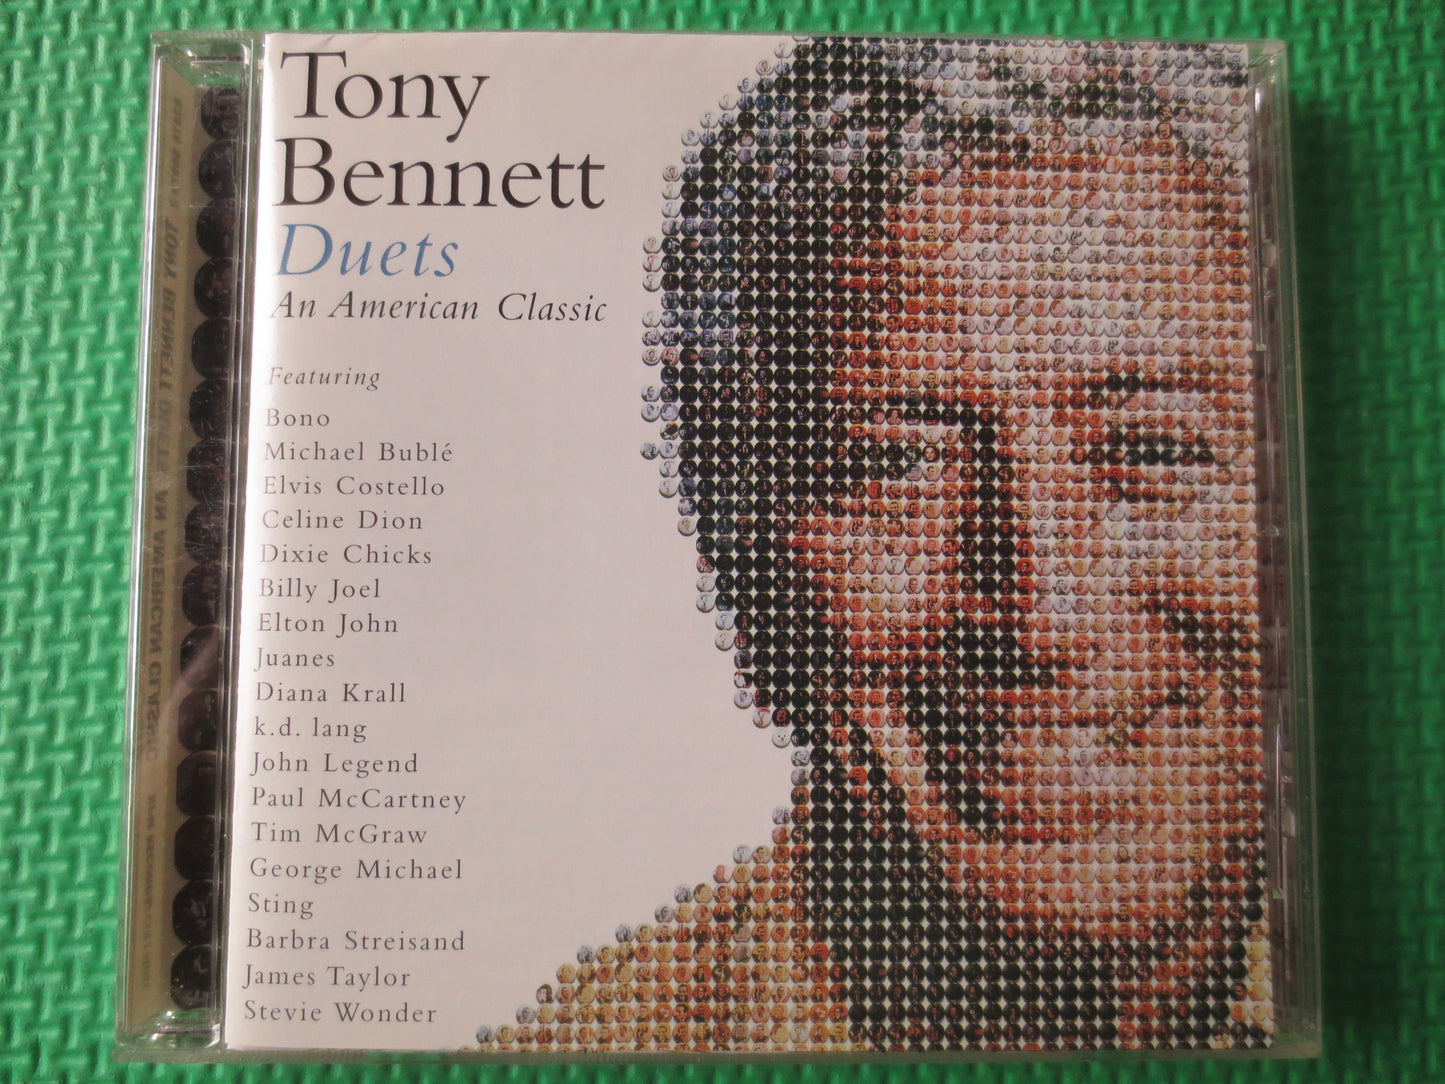 TONY BENNETT, DUETS, Tony Bennett Cds, Jazz Cds, Music Cds, Tony Bennett Albums, Jazz Music Cd, Big Bands, 2000 Compact Discs